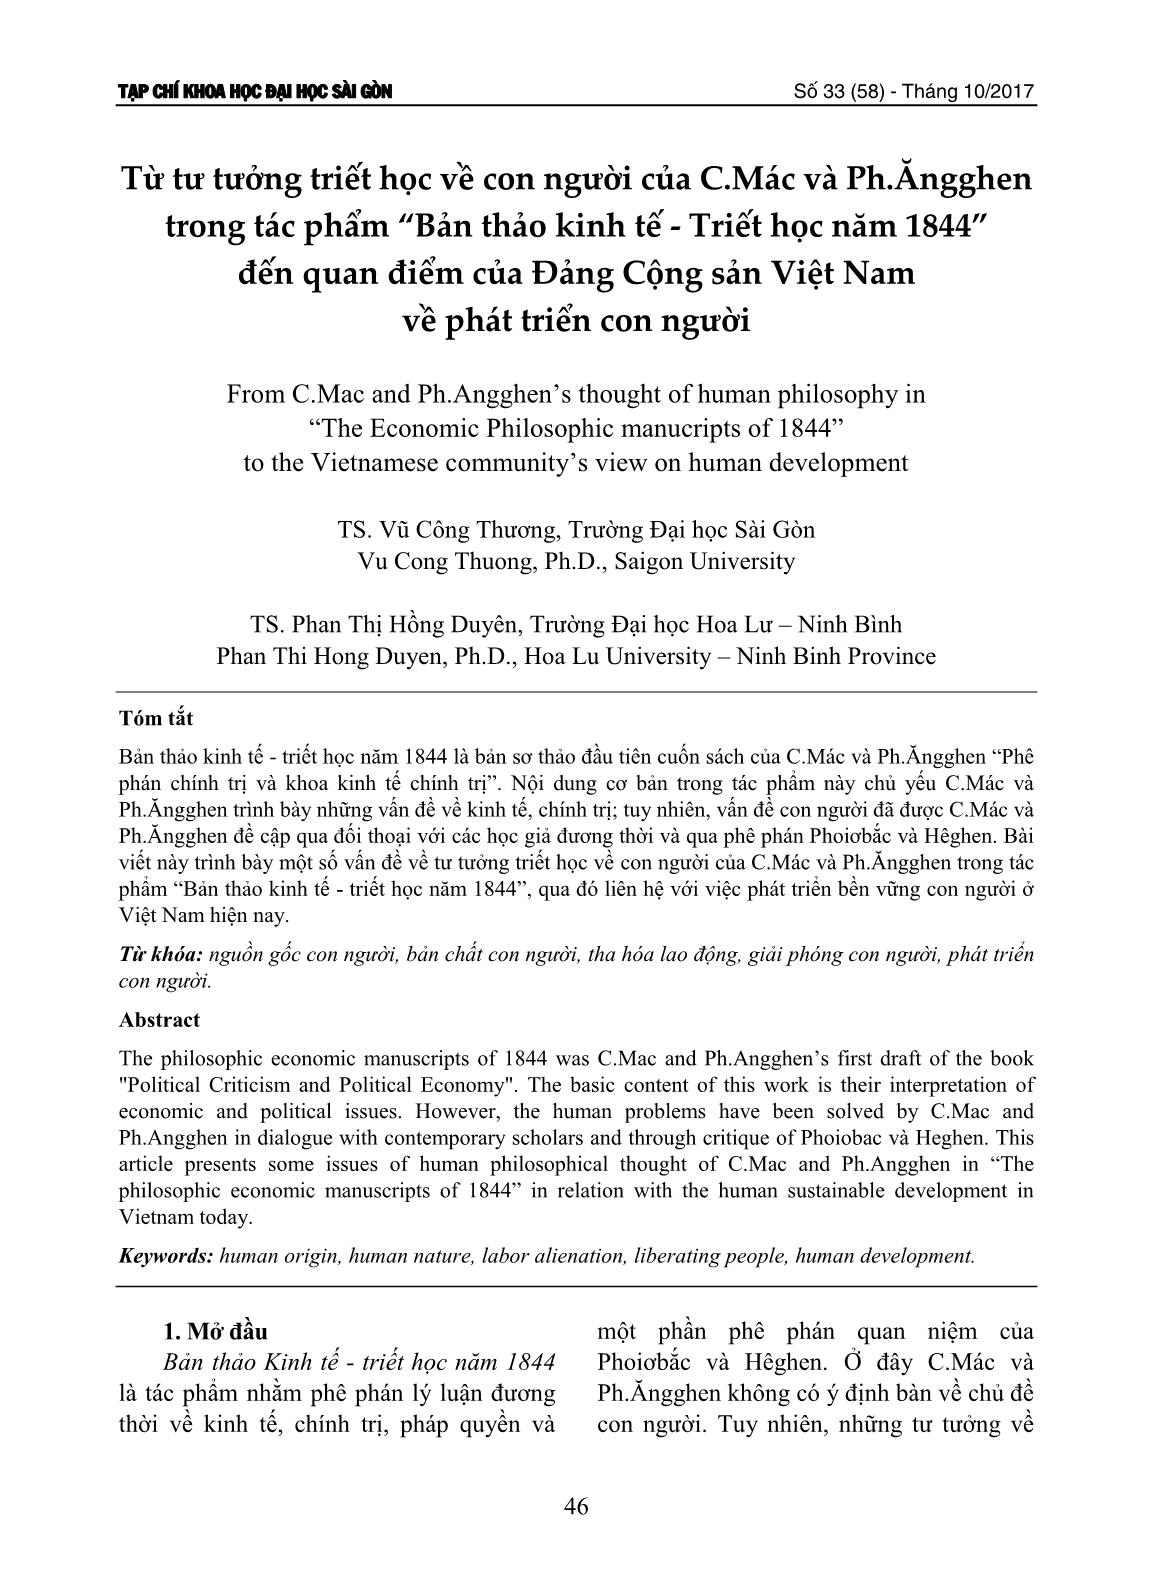 Từ tư tưởng triết học về con người của C.Mác và Ph.Ăngghen trong tác phẩm “Bản thảo kinh tế - Triết học năm 1844” đến quan điểm của Đảng Cộng sản Việt Nam về phát triển con người trang 1